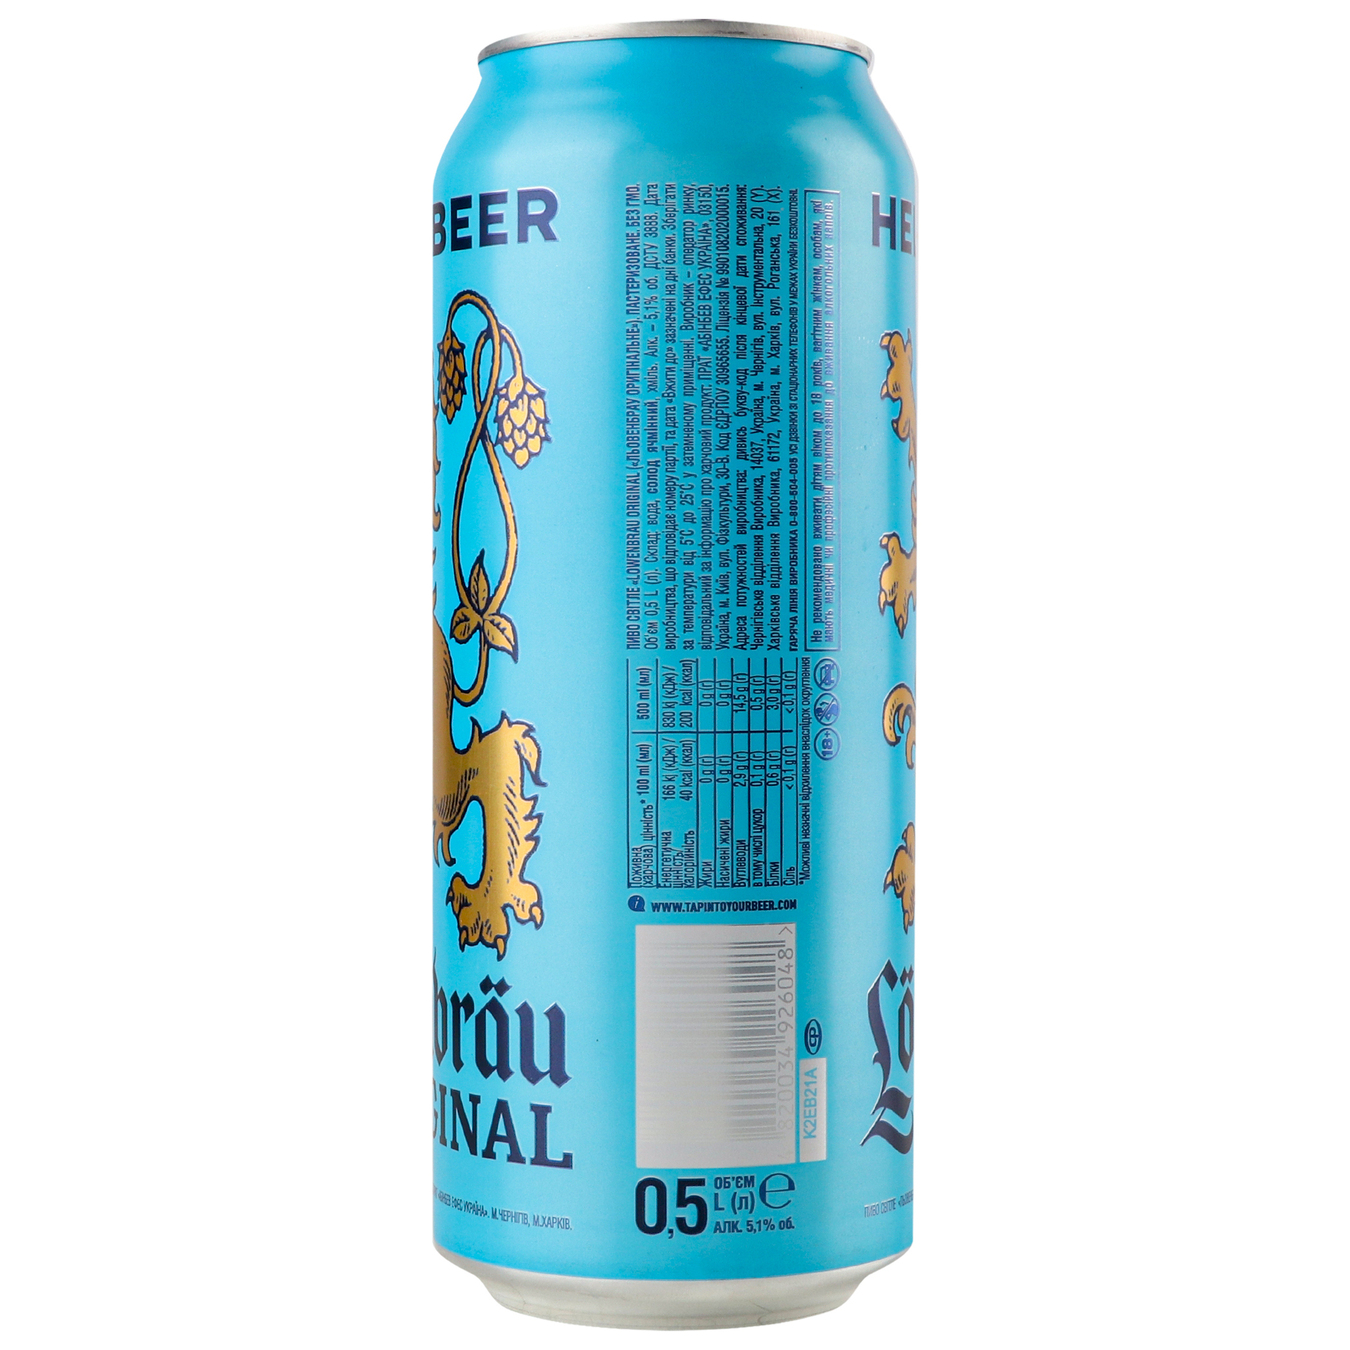 Beer Lowenbrau Original light pasteurized 5.1% 0.5l 5